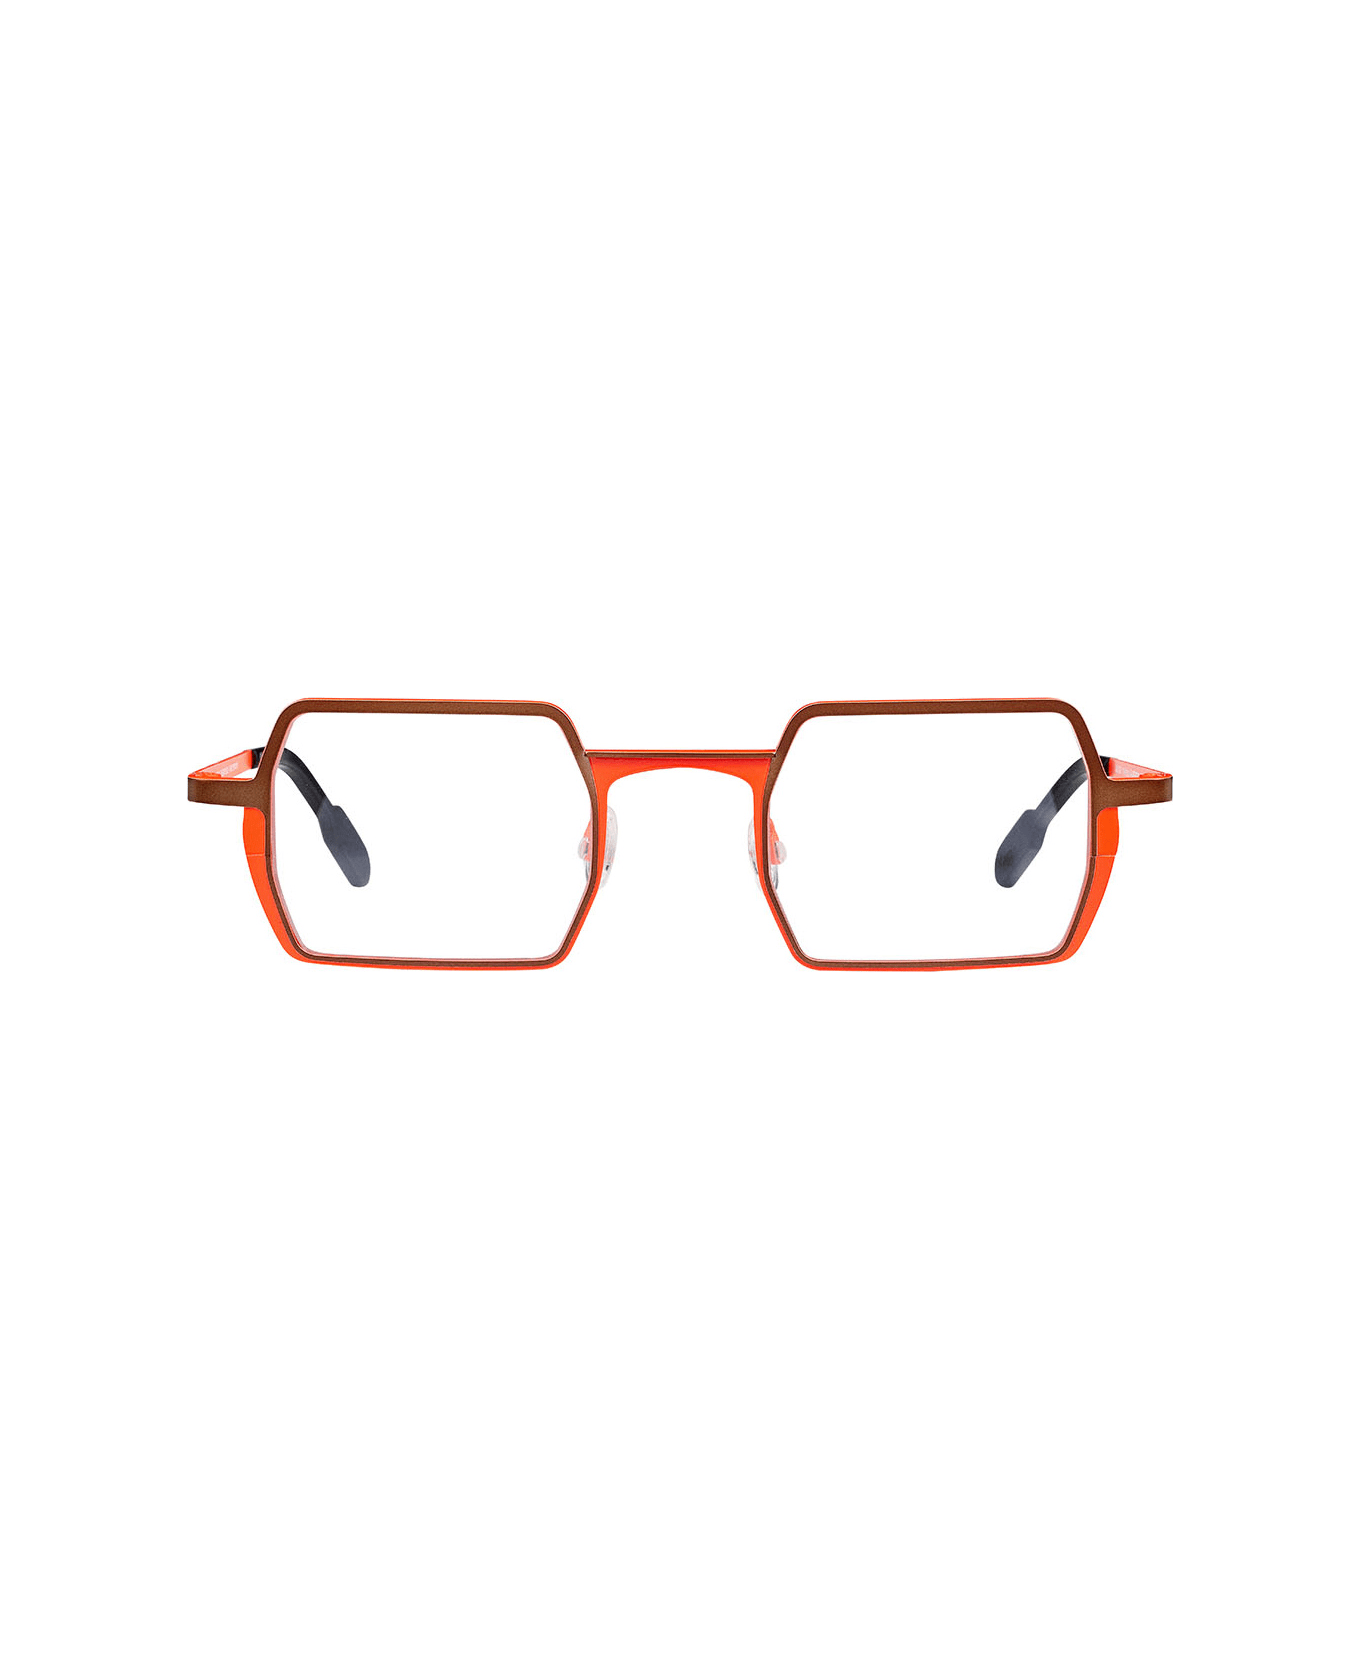 Matttew Ristretto Glasses - Arancione